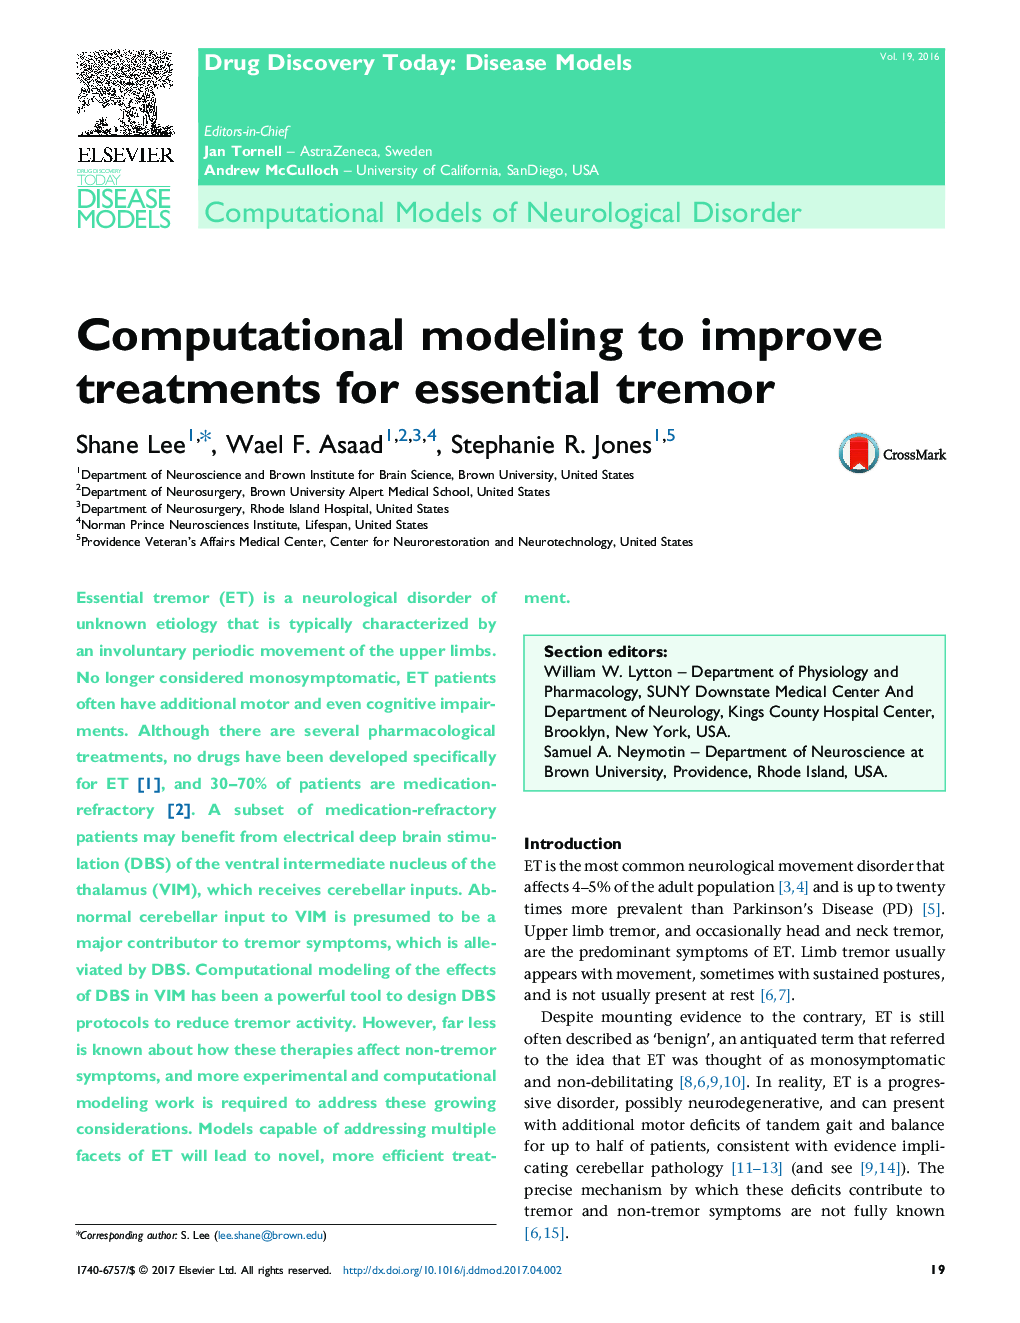 مدل های محاسباتی اختلال عصبی مغز و اعصاب برای بهبود درمان برای ترمور ضروری 